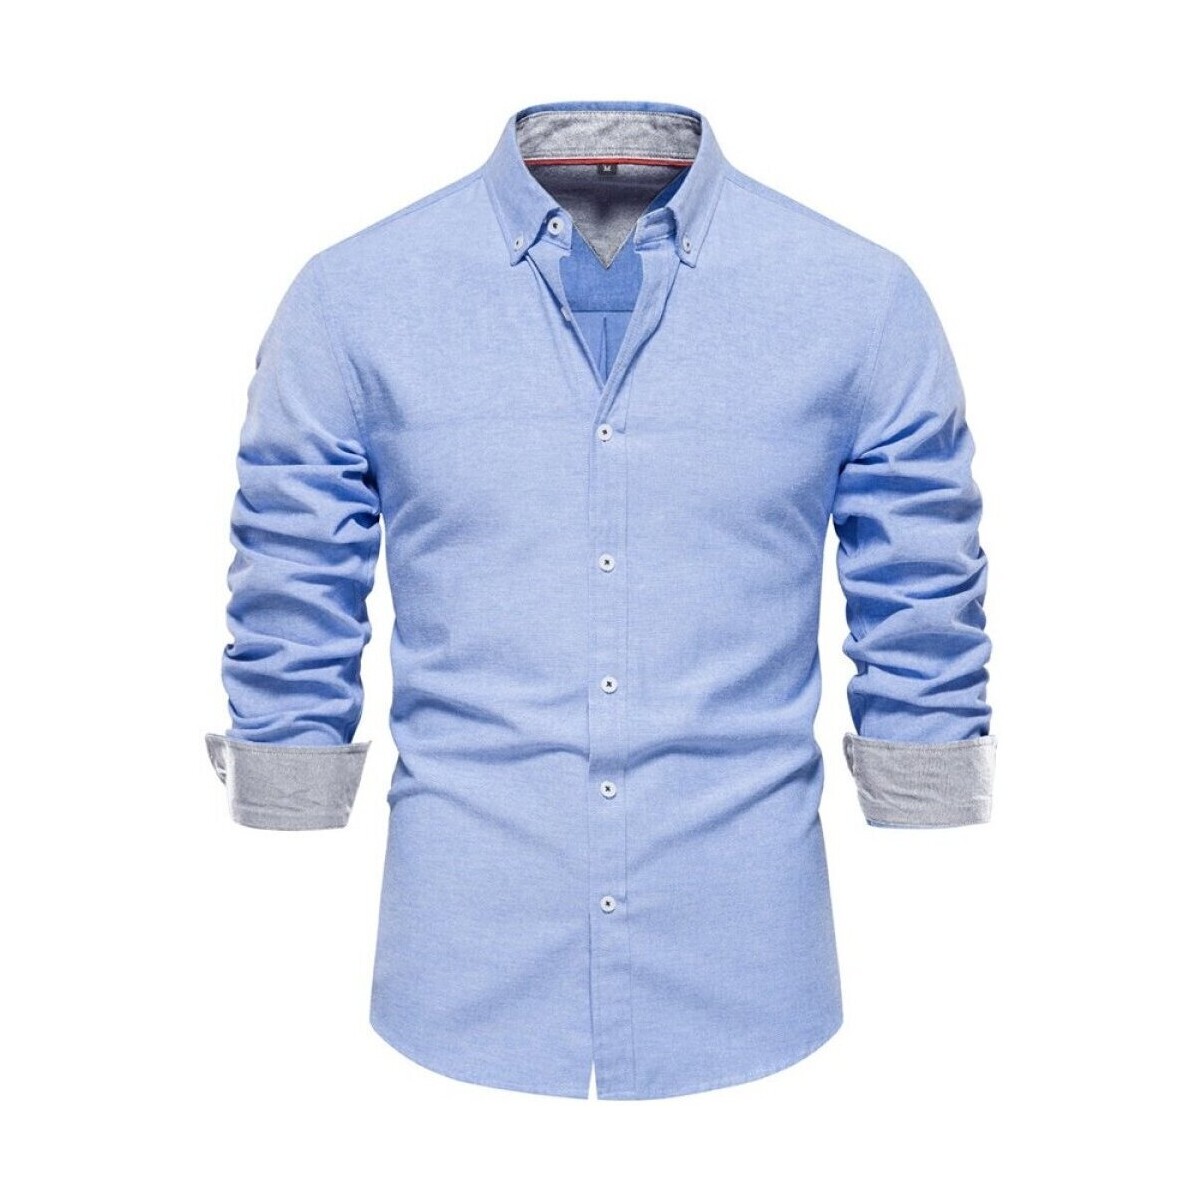 Vêtements Homme Chemises manches longues Atom SH700 Bleu